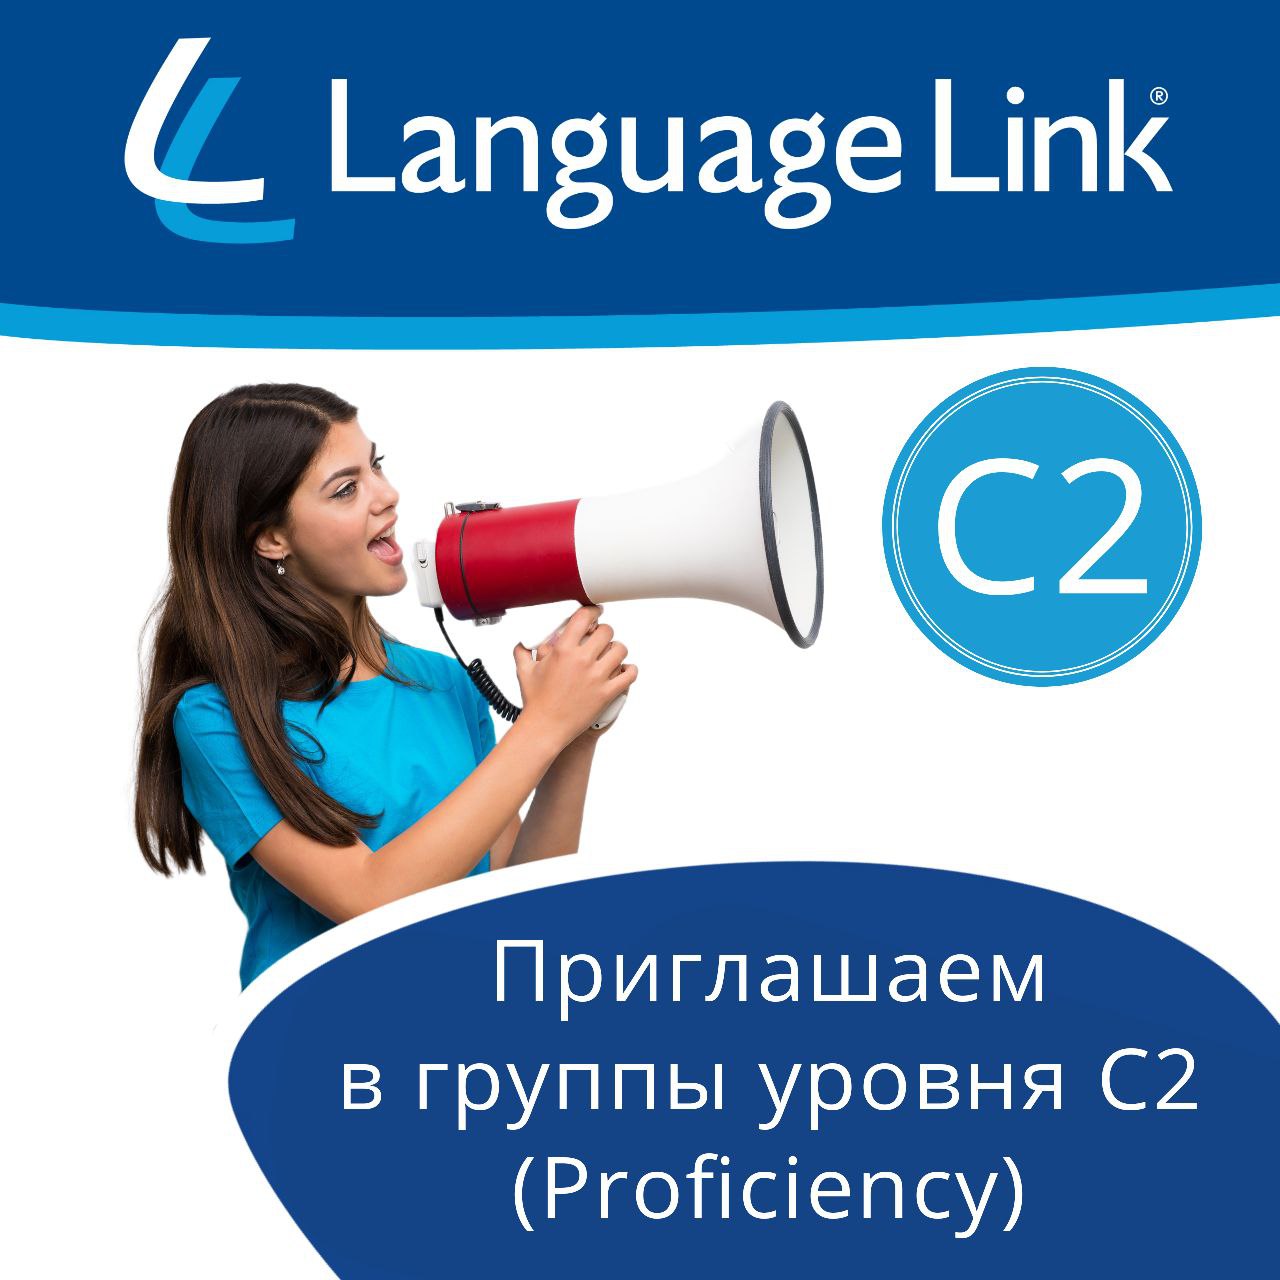 Language Link приглашает в группы уровня C2 (Proficiency)